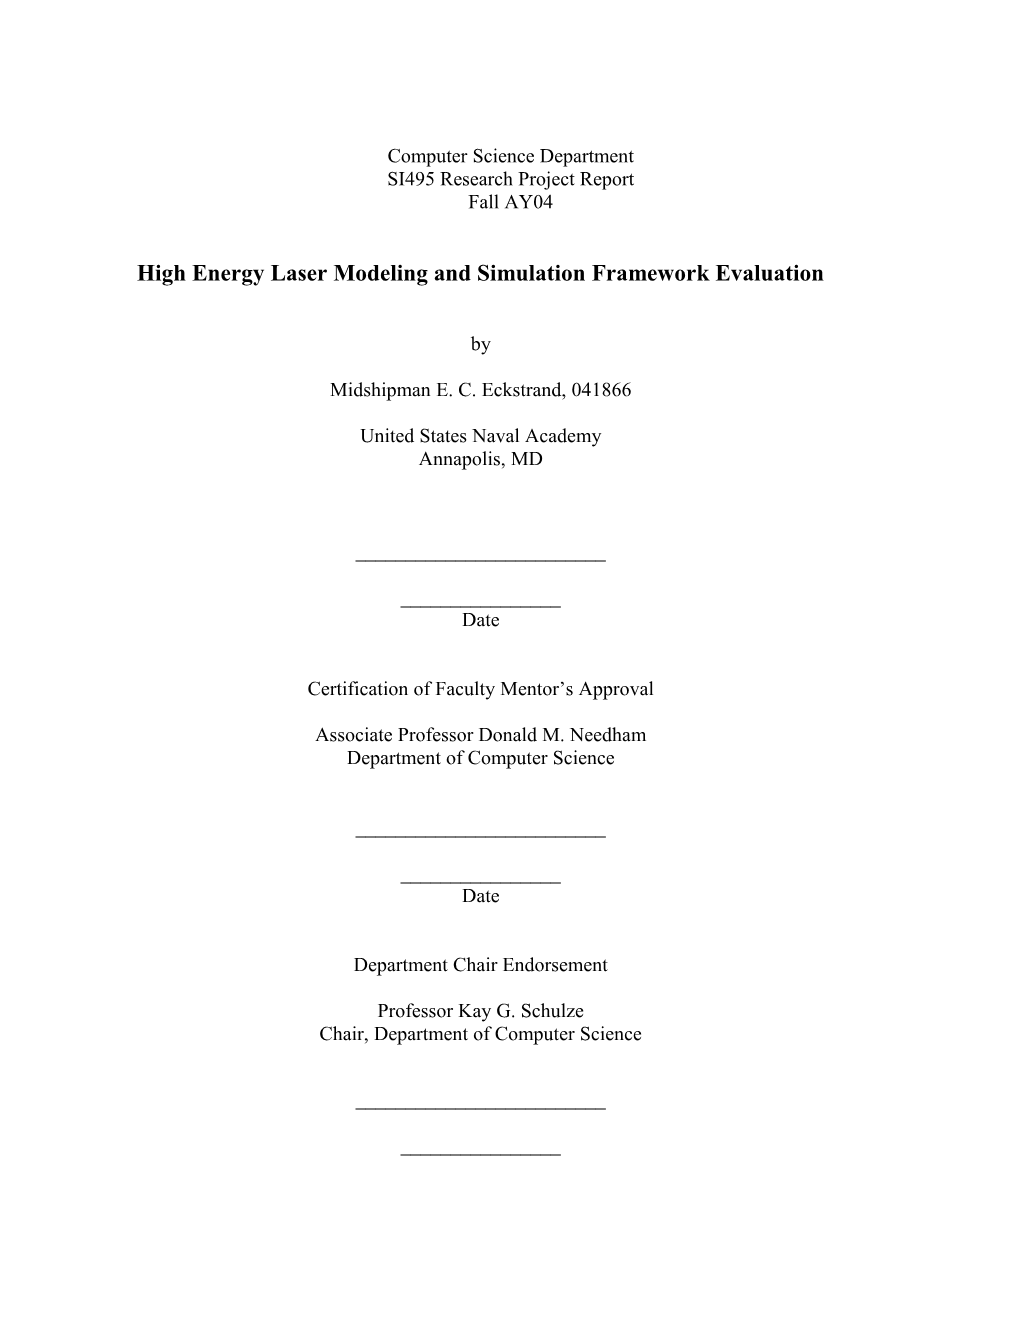 High Energy Laser Modeling and Simulation Framework Evaluation